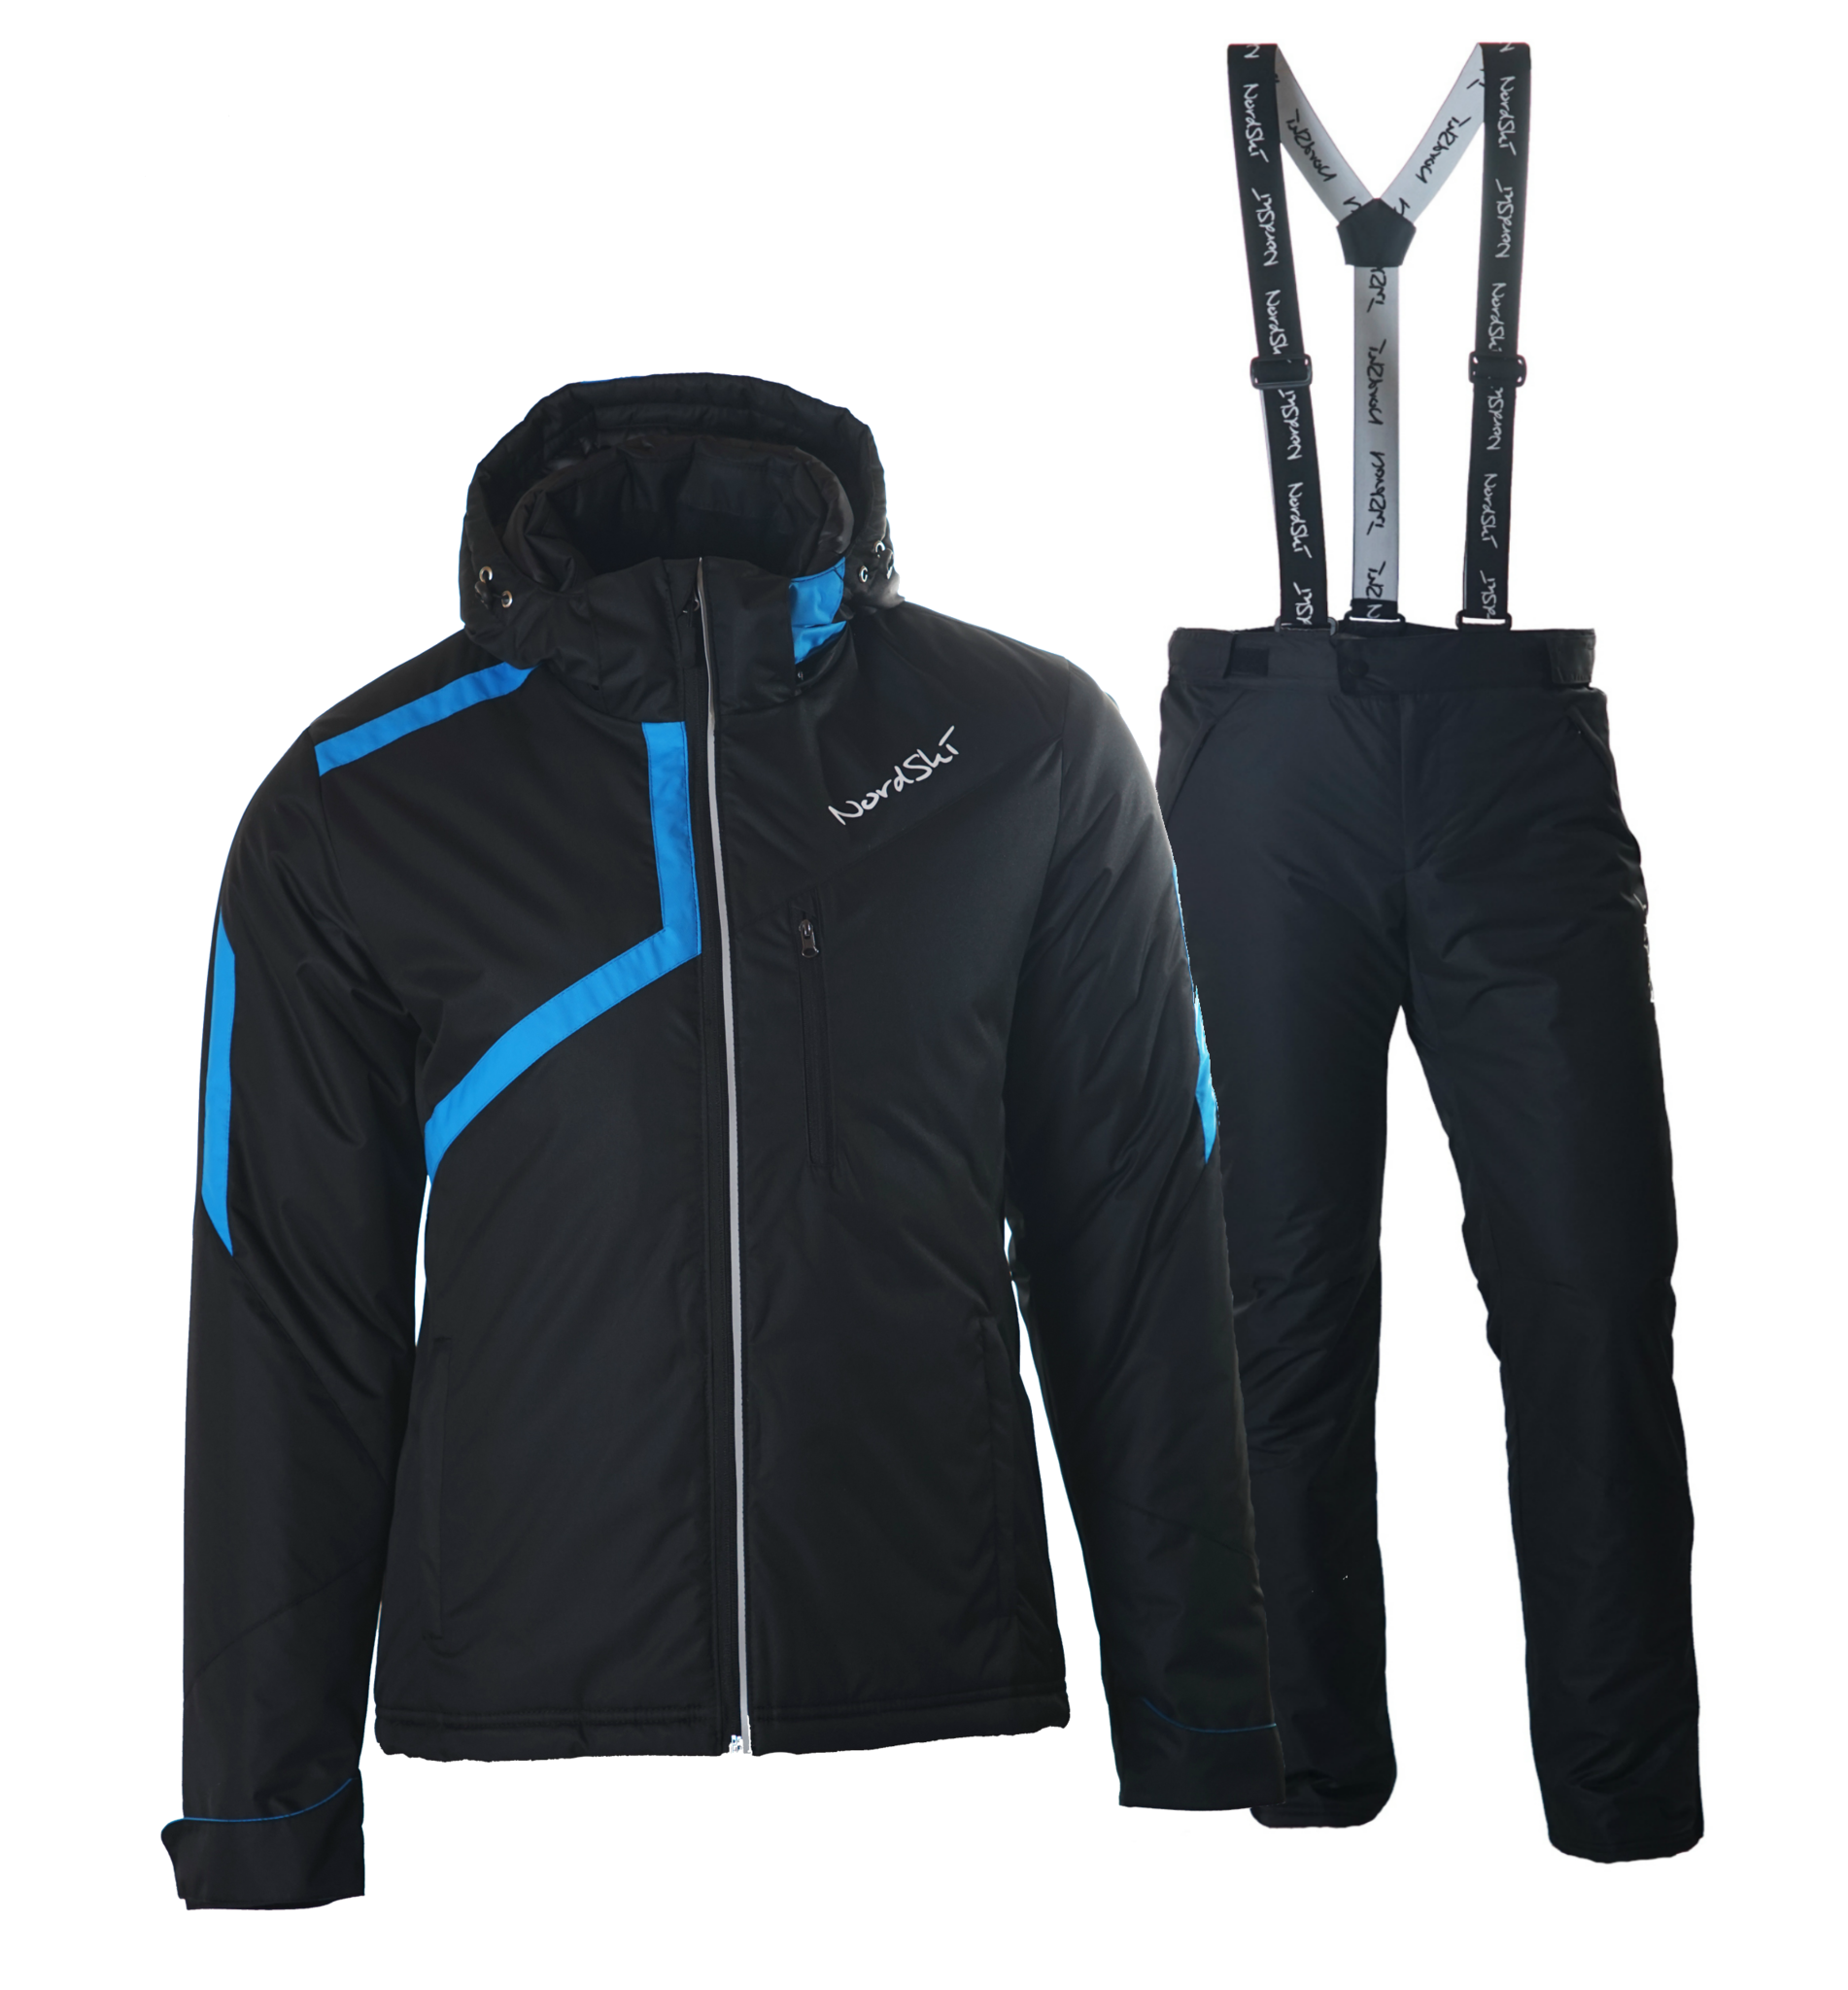 Мужская горнолыжная. Nordski куртка Premium 120180. Лыжный костюм тепляк Fisher. Утепленная куртка Nordski Premium Navy (42-2xs). Утеплённая прогулочная лыжная куртка Nordski Premium Black-Lime женская (nsw120180).